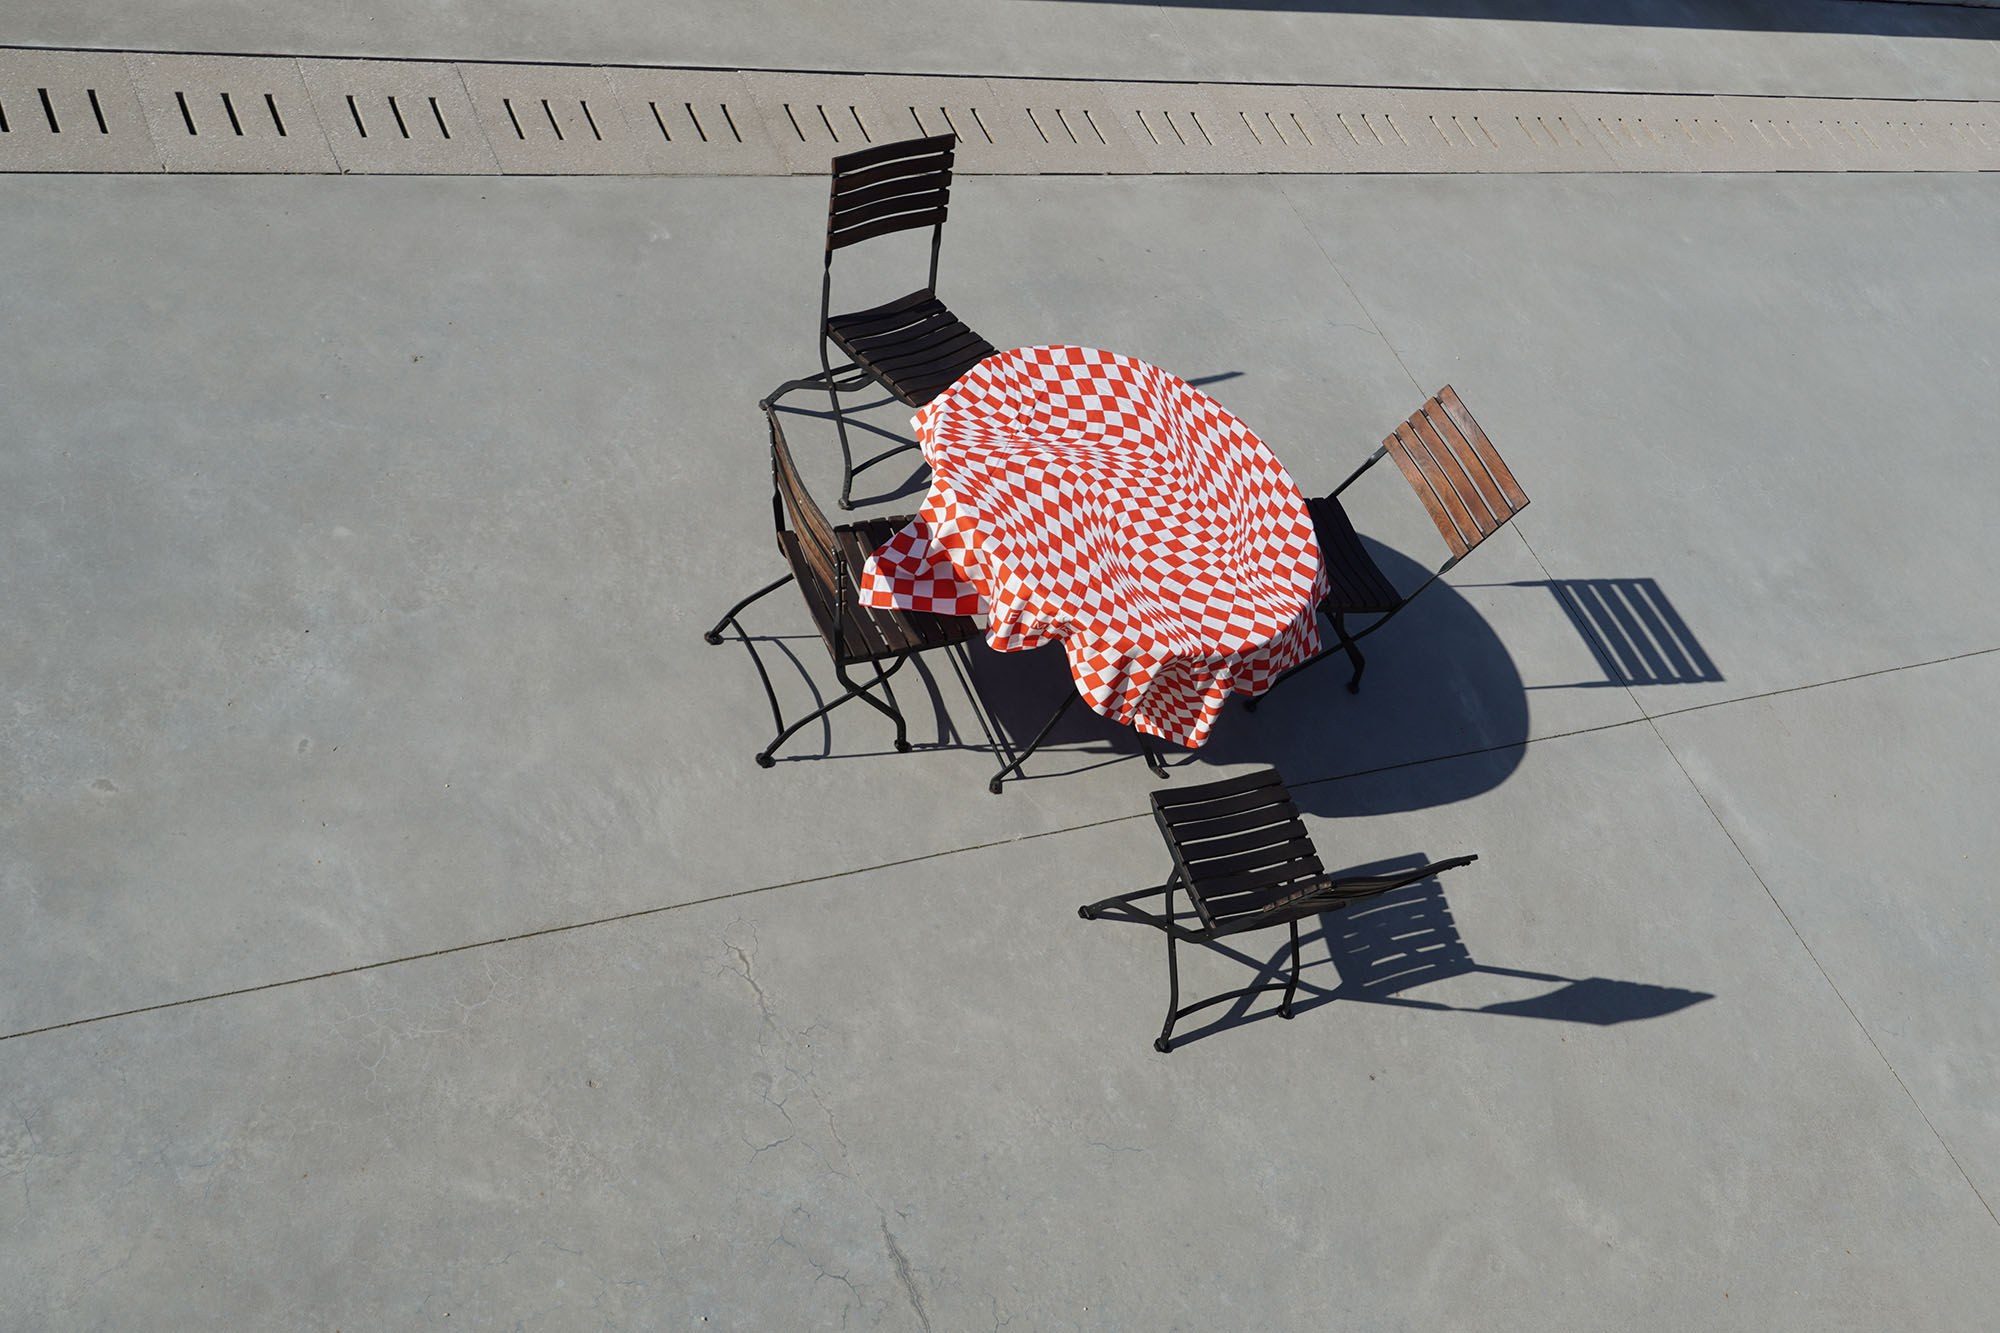 Landhaus tischdecke tablecloth karo bavarian german pattern visual effect design florent souly